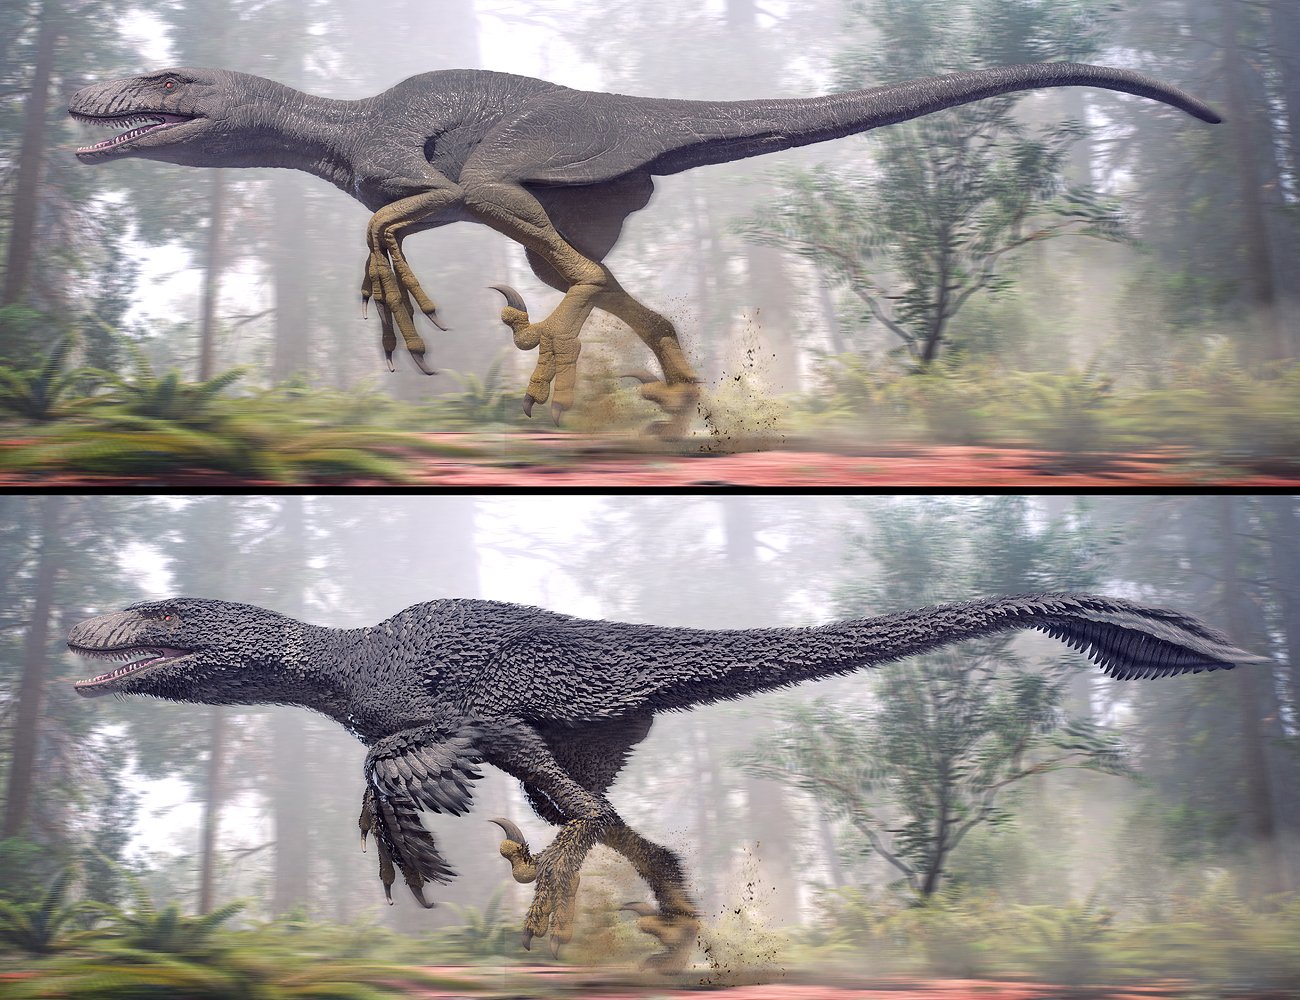 Dakotaraptor by: Herschel Hoffmeyer, 3D Models by Daz 3D